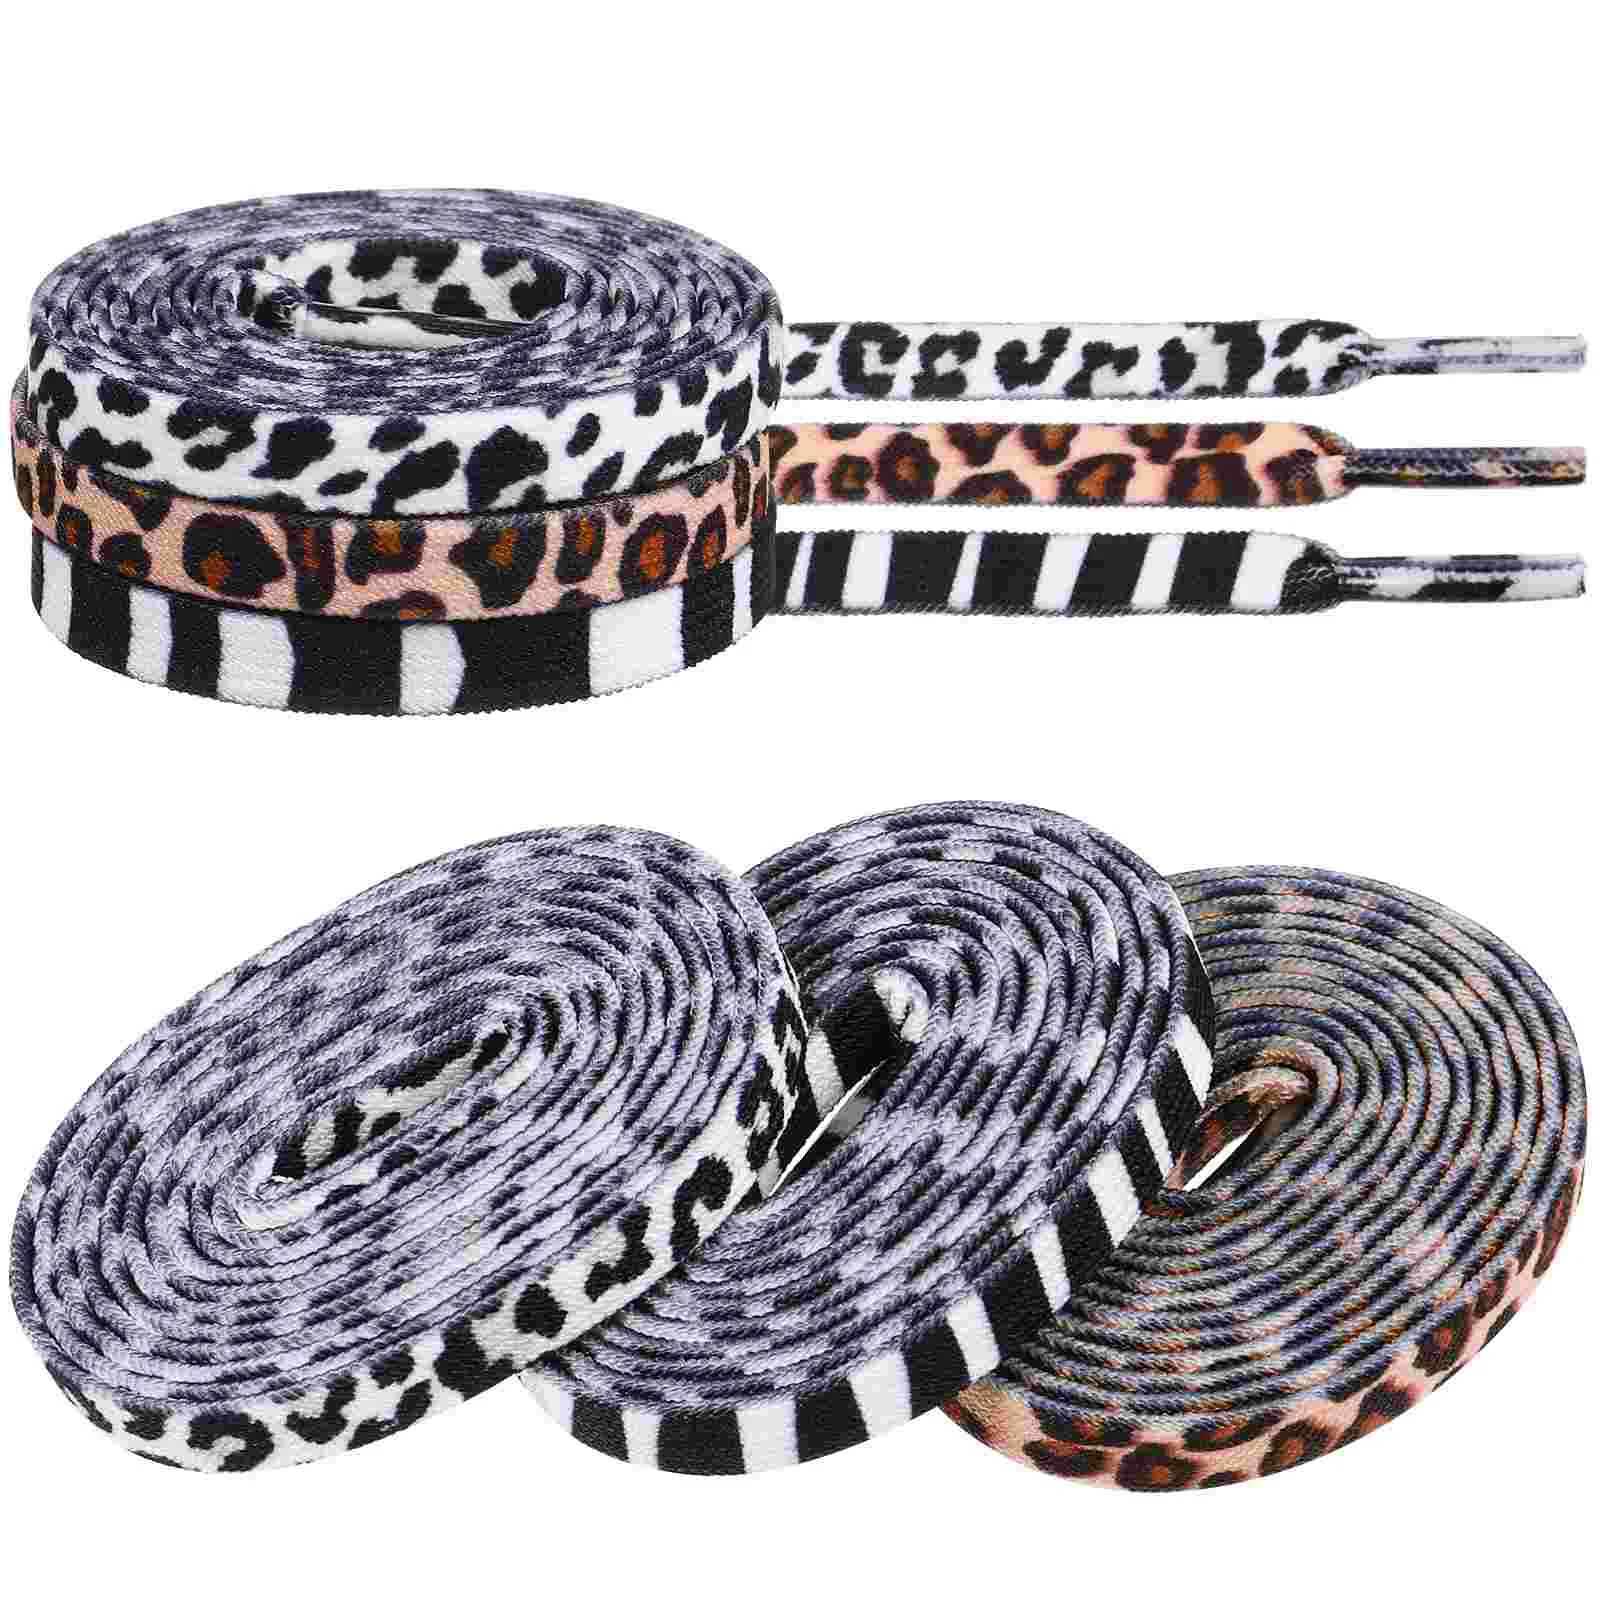 3 pary snuelace Sneaker elastyczne sznurowadła męskie trampki elastyczne sznurowane buty krawaty w paski z płaskiego poliestru męska moda męska